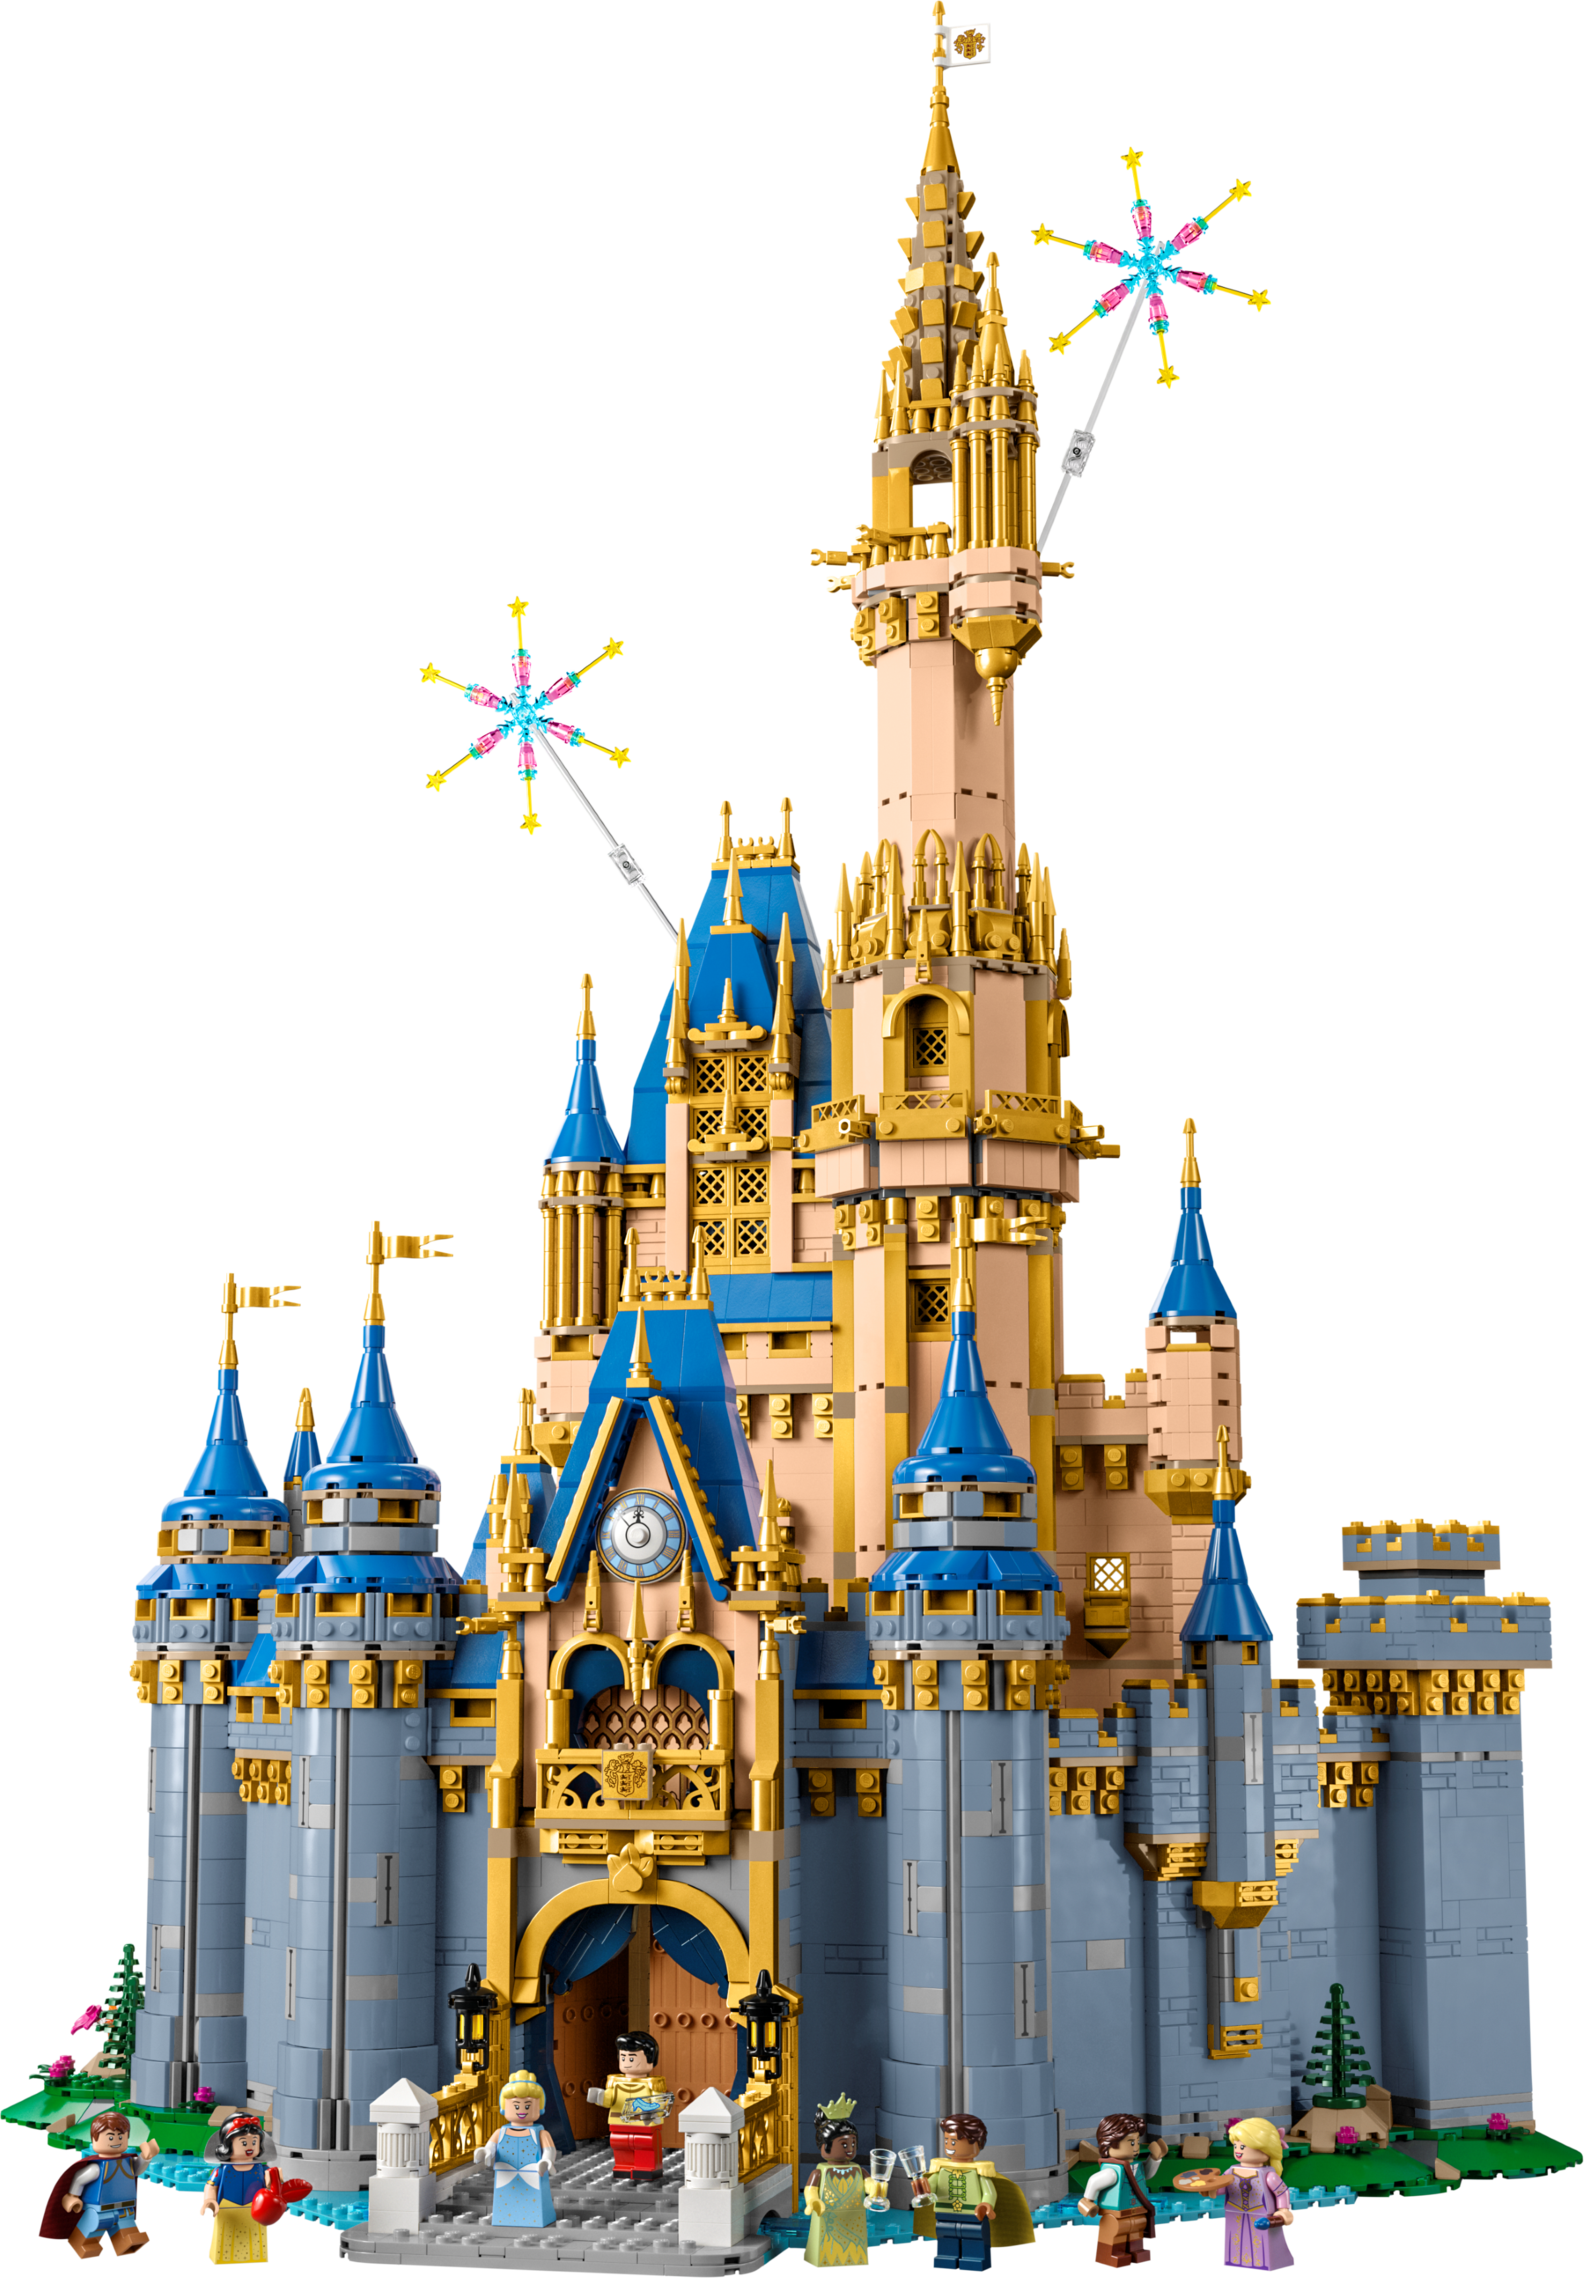 Aanbieding van Disney kasteel voor 399,99€ bij Lego